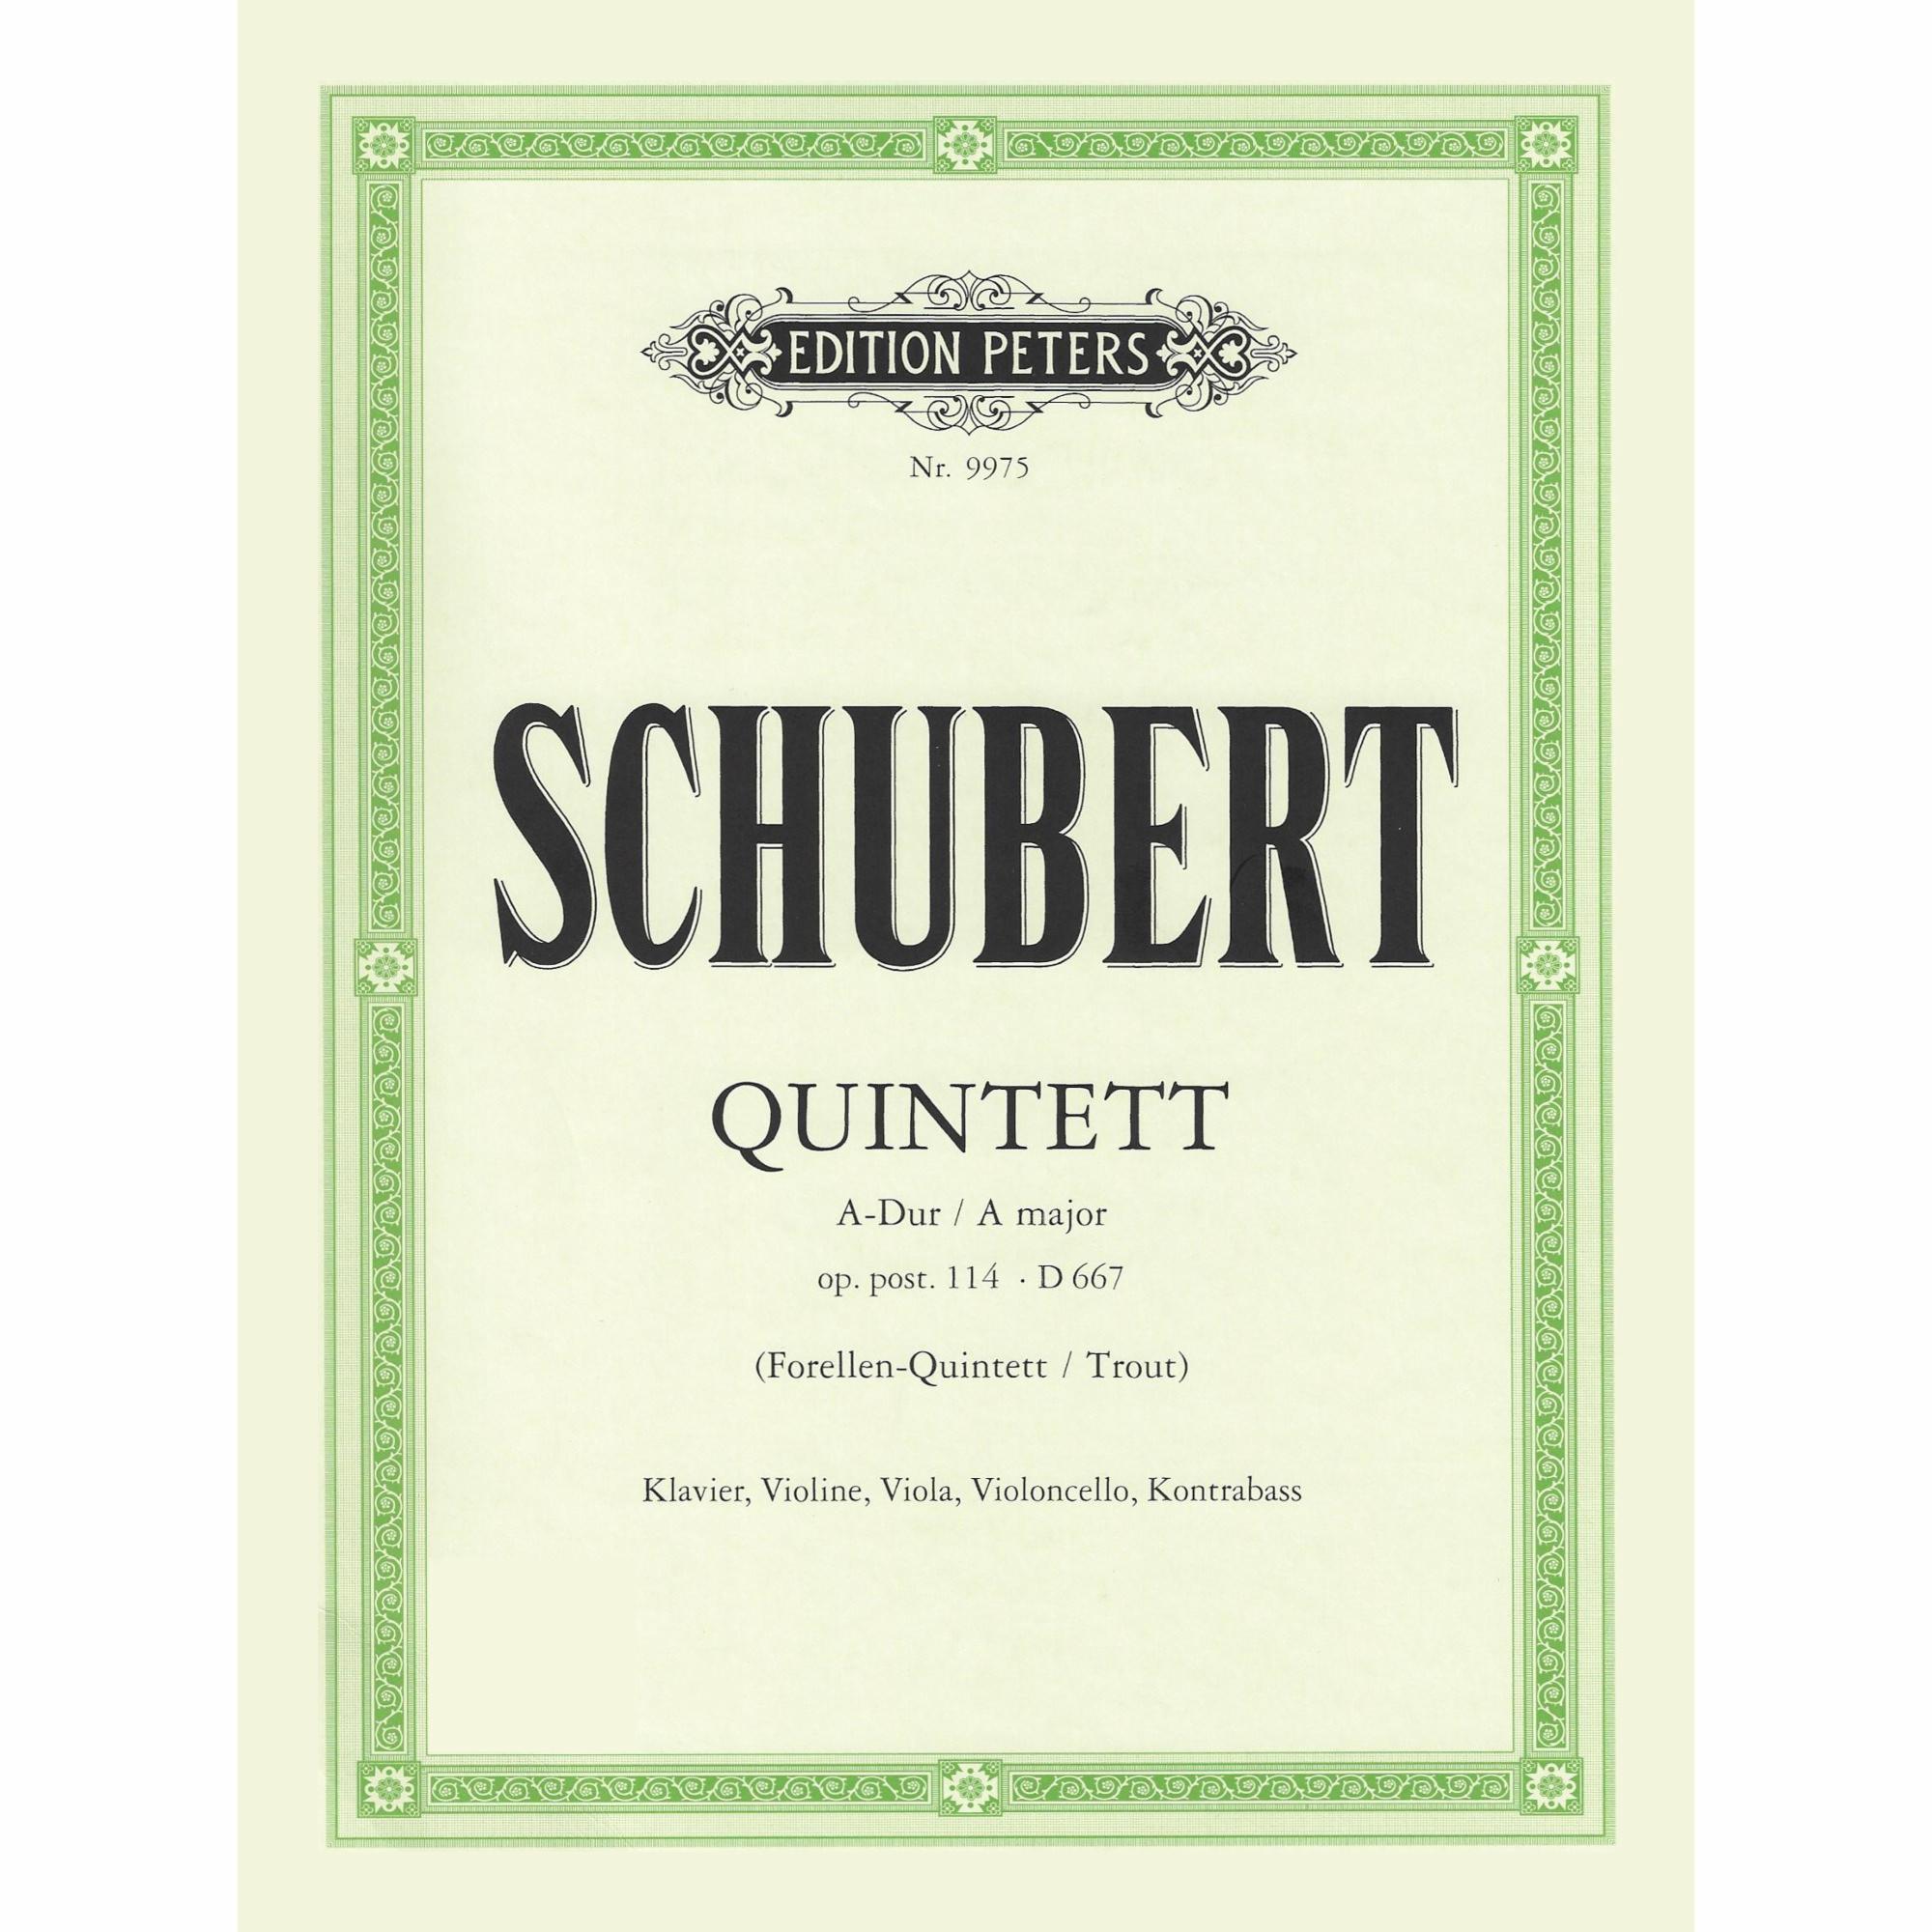 Schubert -- Quintet in A Major, D. 667 (The Trout)